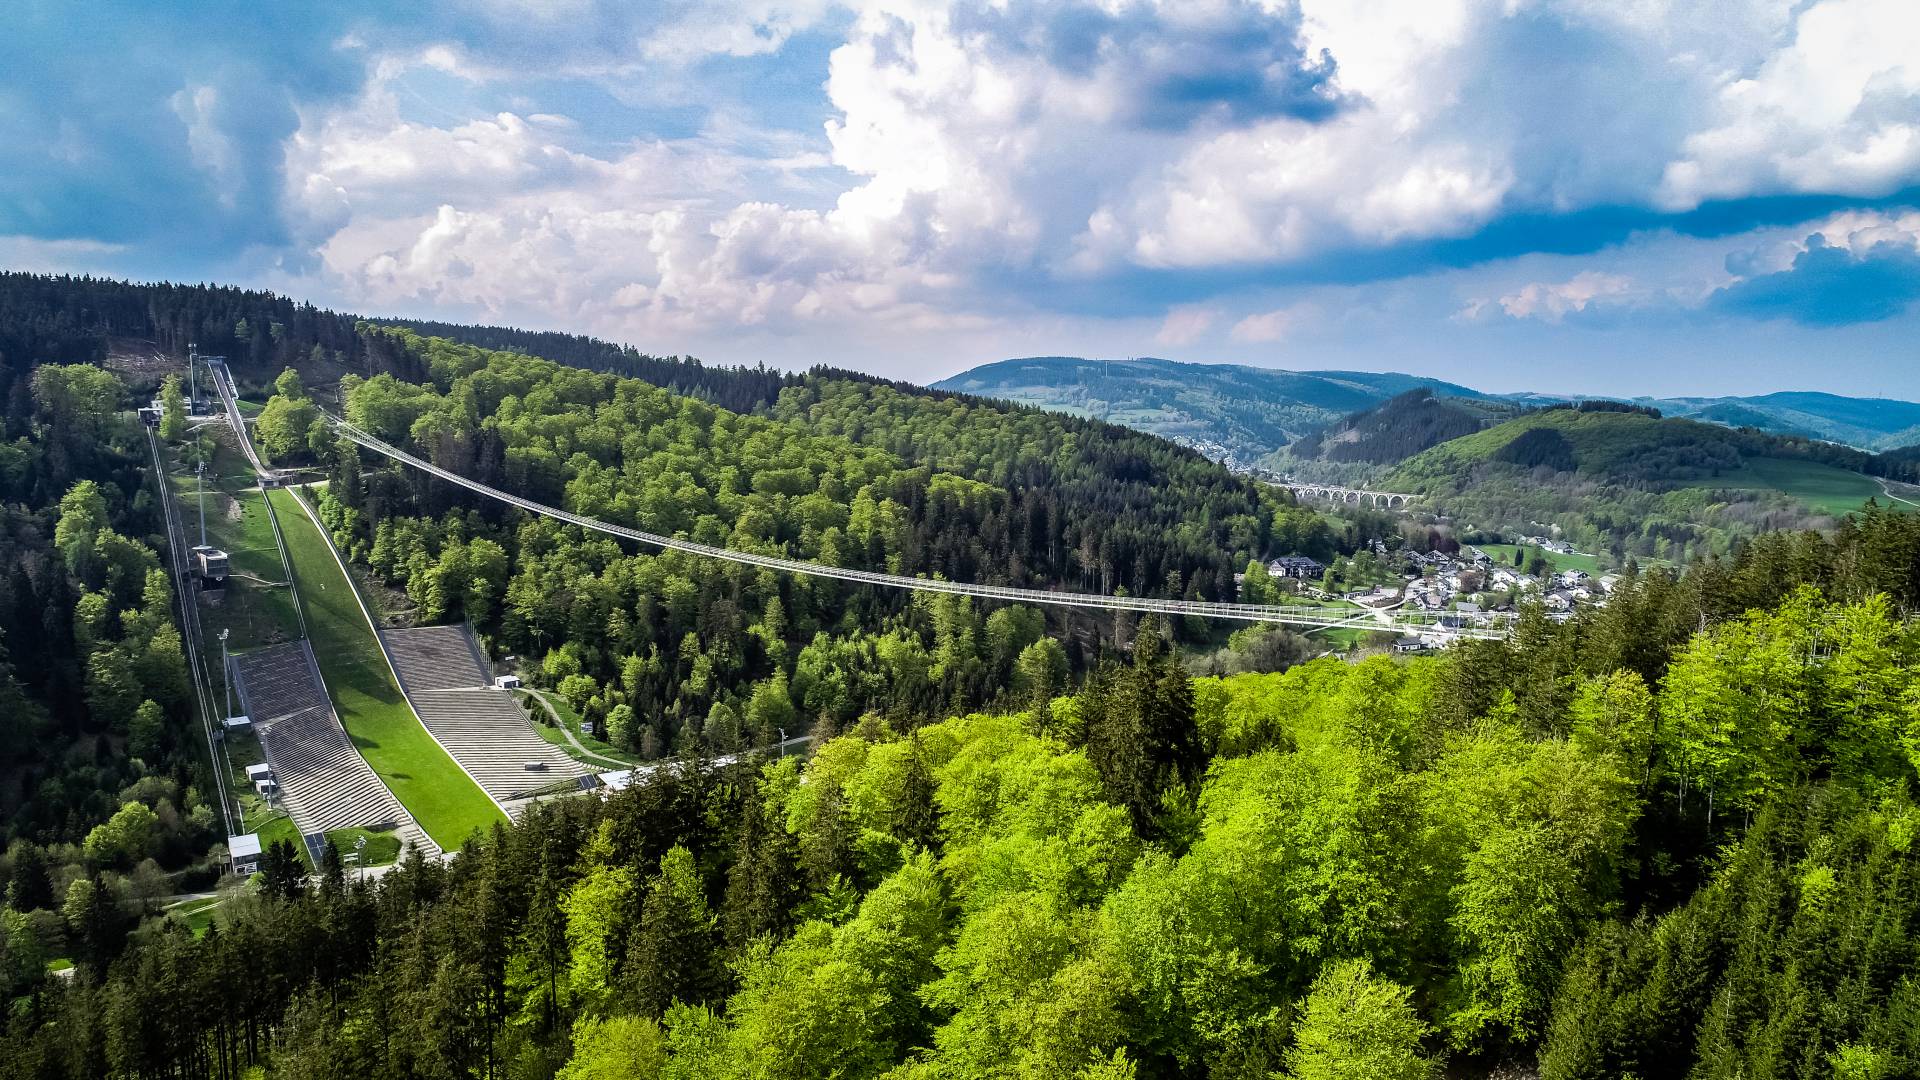 Skywalk Willingen: Germany's longest suspension bridge